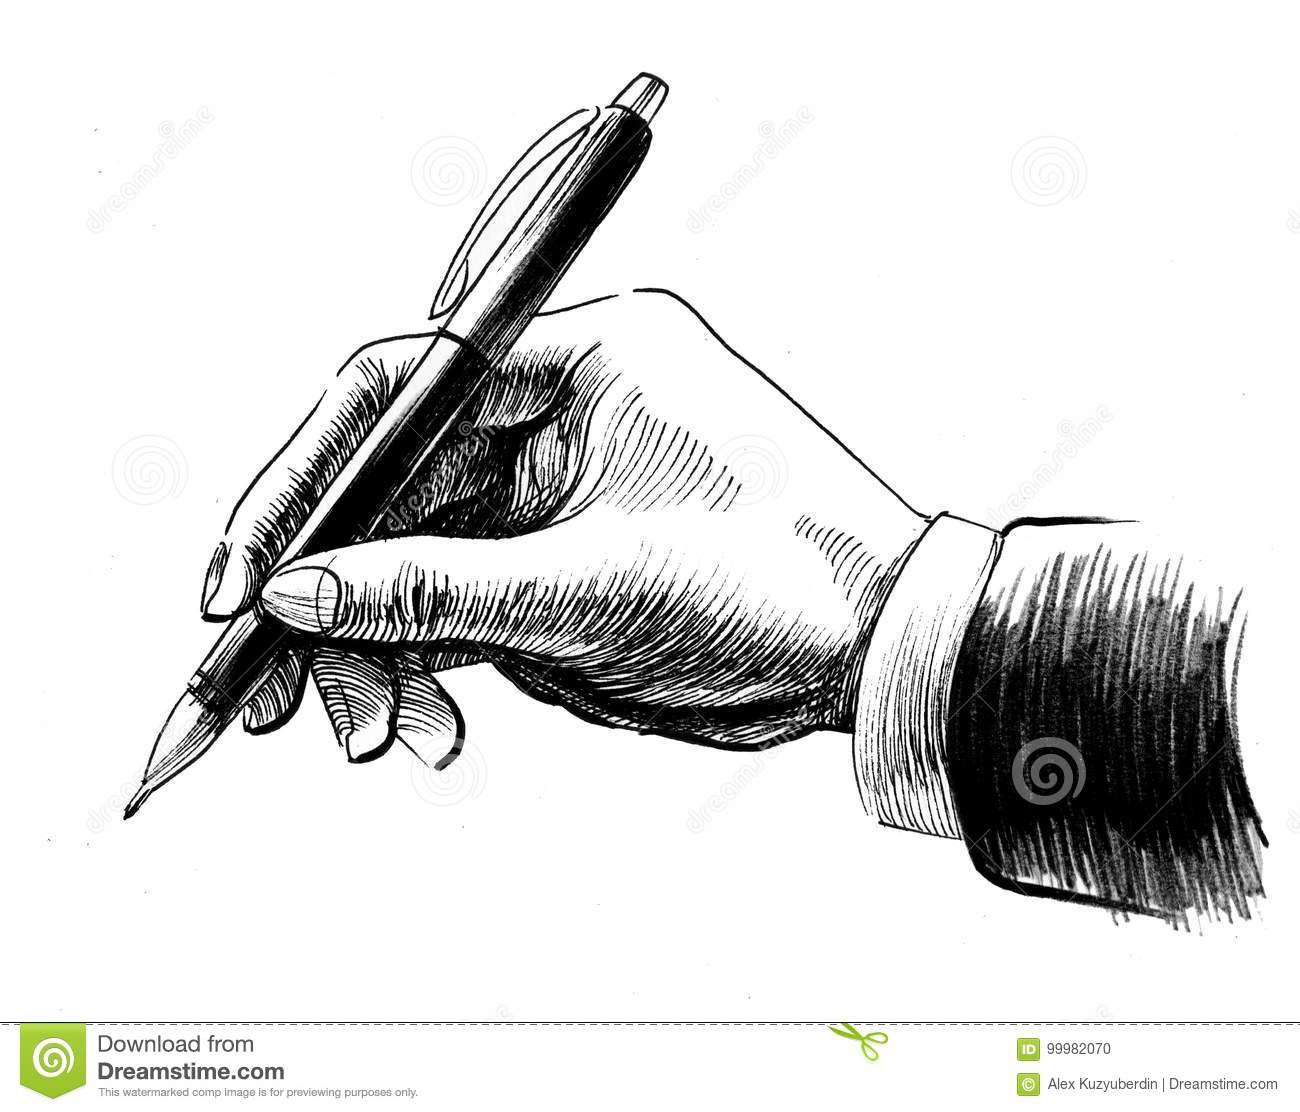 retro-styled-illustration-hand-writing-pen-hand-pen-99982070.jpg